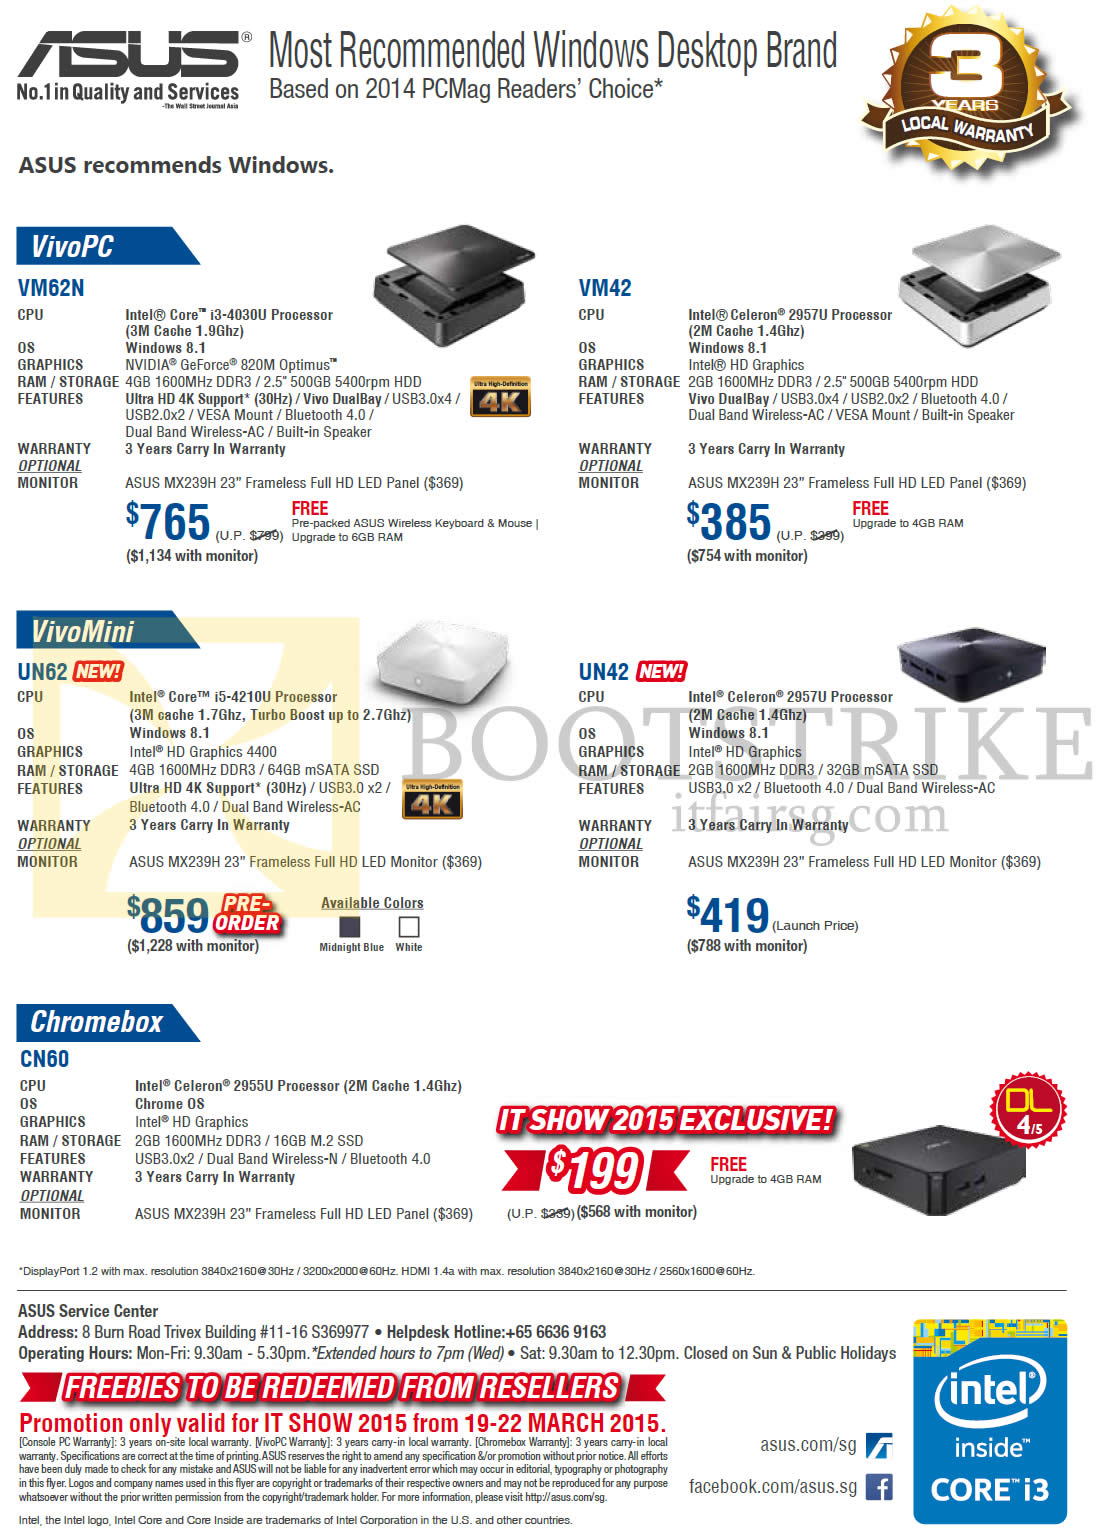 IT SHOW 2015 price list image brochure of ASUS Desktop PCs VivoPC, VivoMini, Chromebox, VM62N, VM42, UN62, UN42, CN60